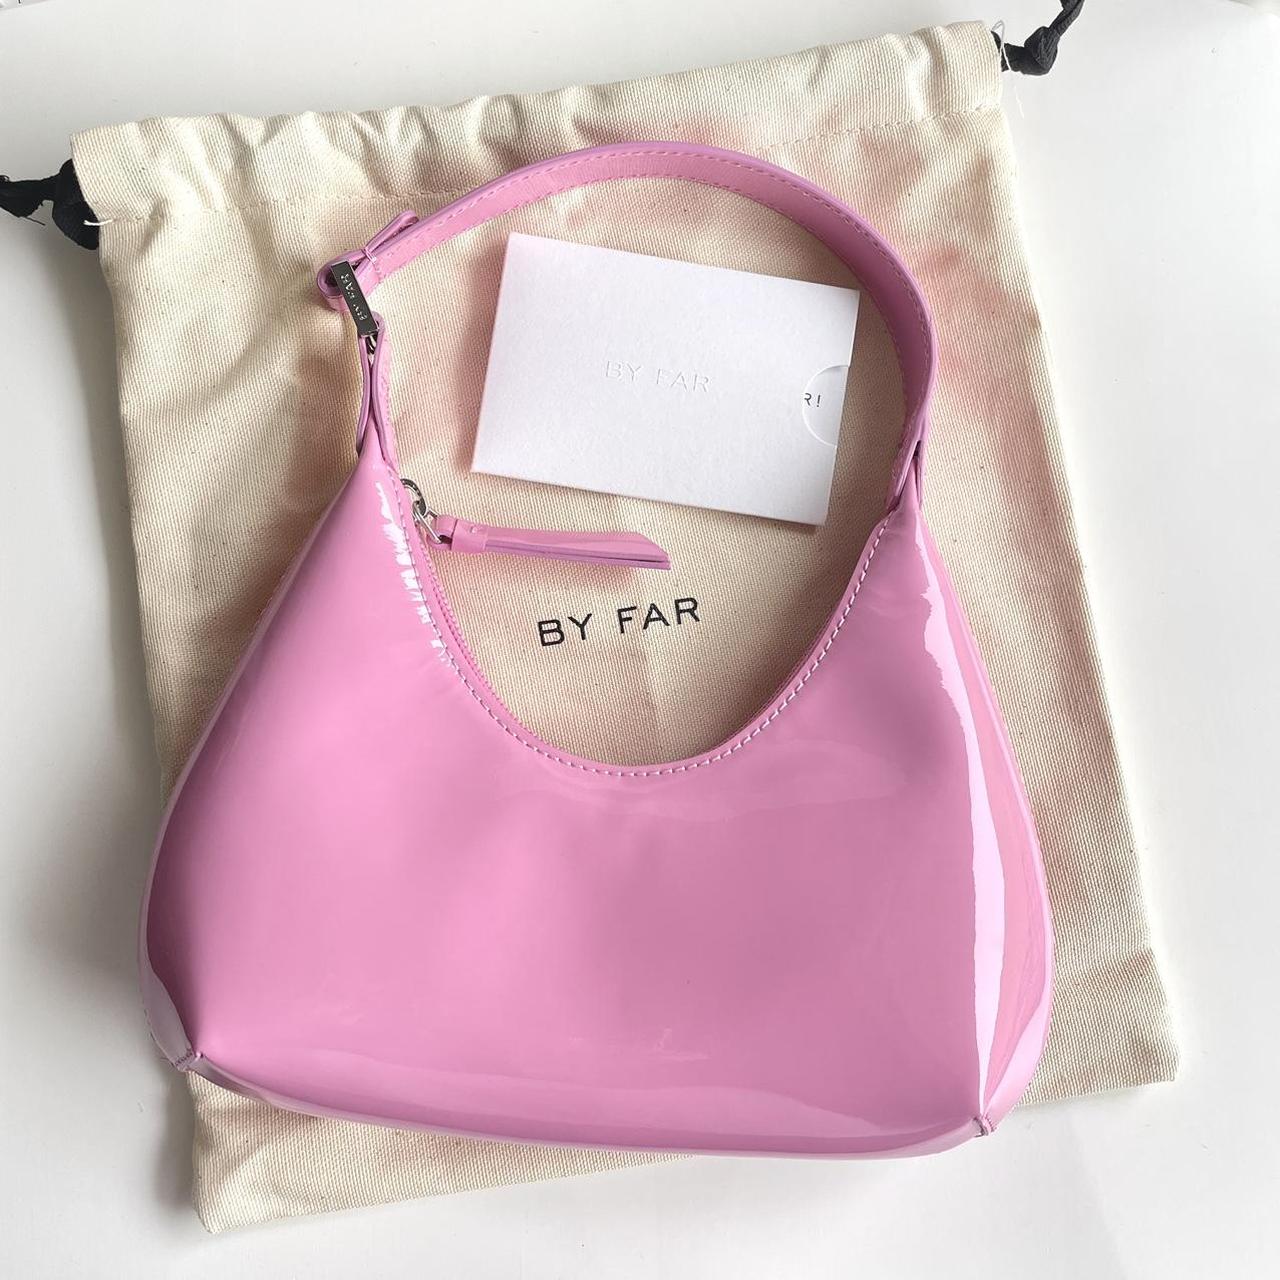 Far Baby Amber Shoulder Bag